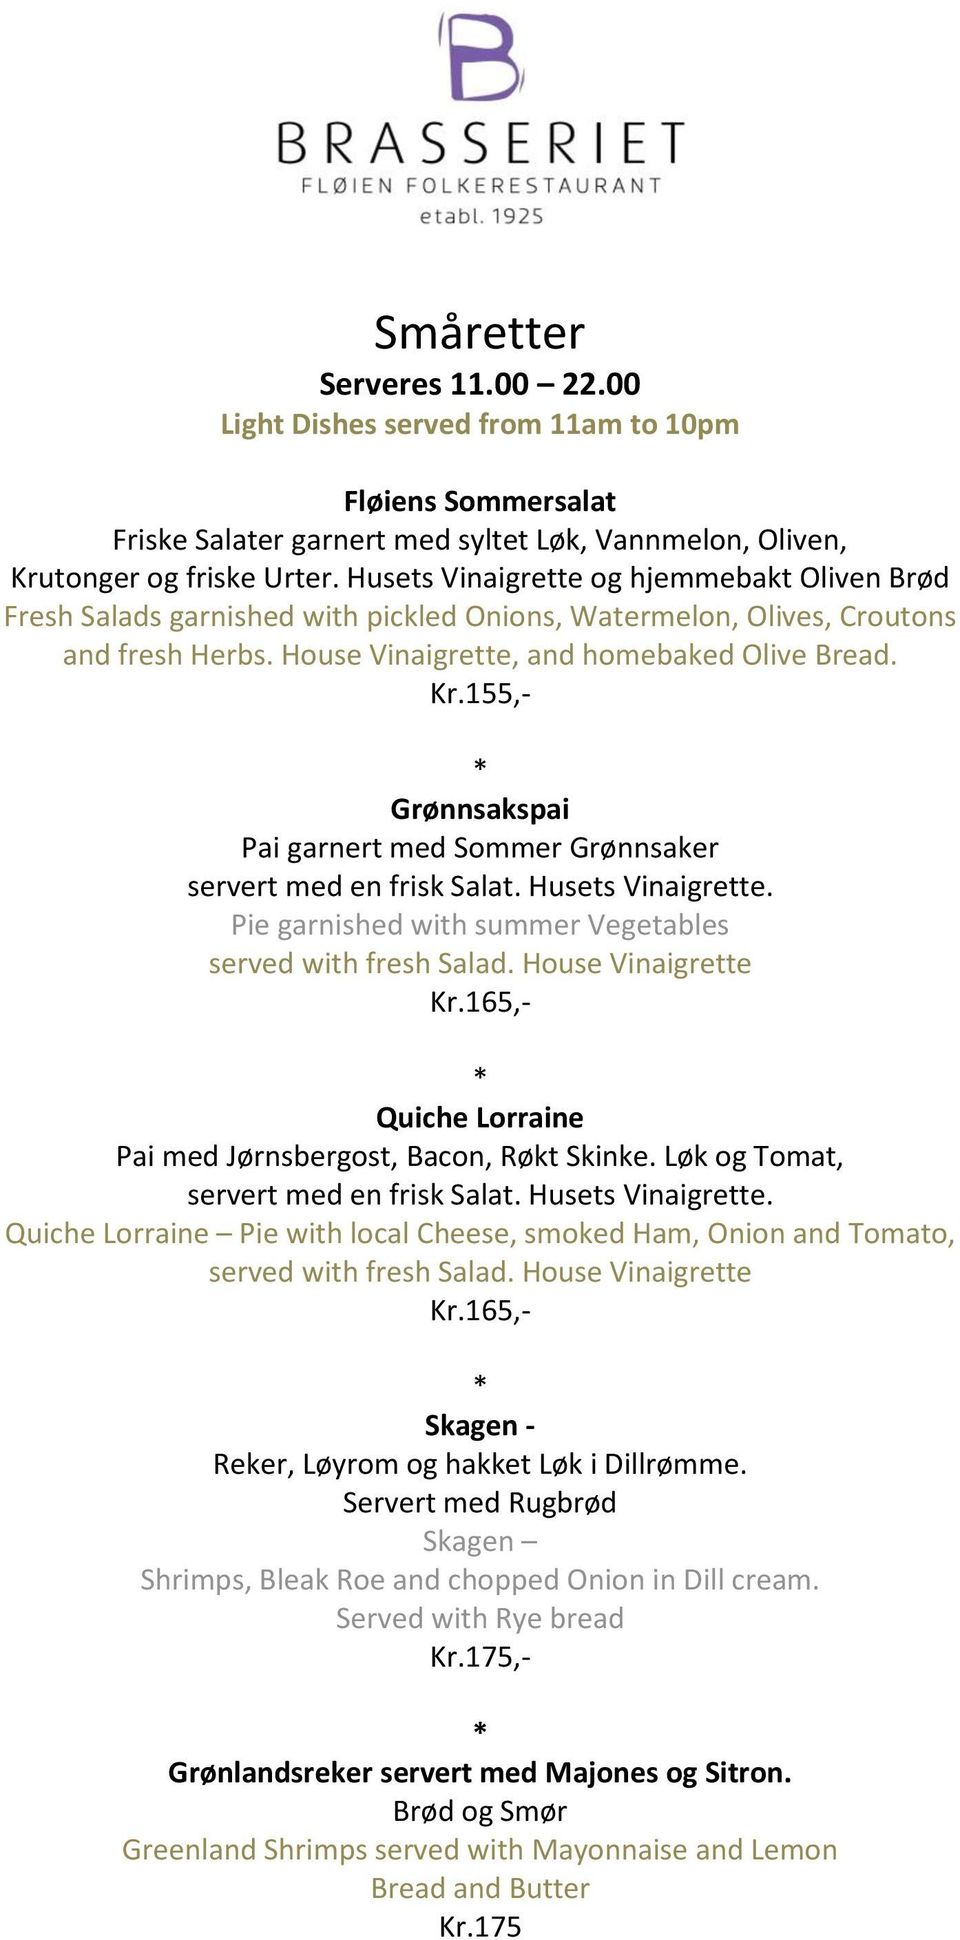 155,- Grønnsakspai Pai garnert med Sommer Grønnsaker servert med en frisk Salat. Husets Vinaigrette. Pie garnished with summer Vegetables served with fresh Salad. House Vinaigrette Kr.